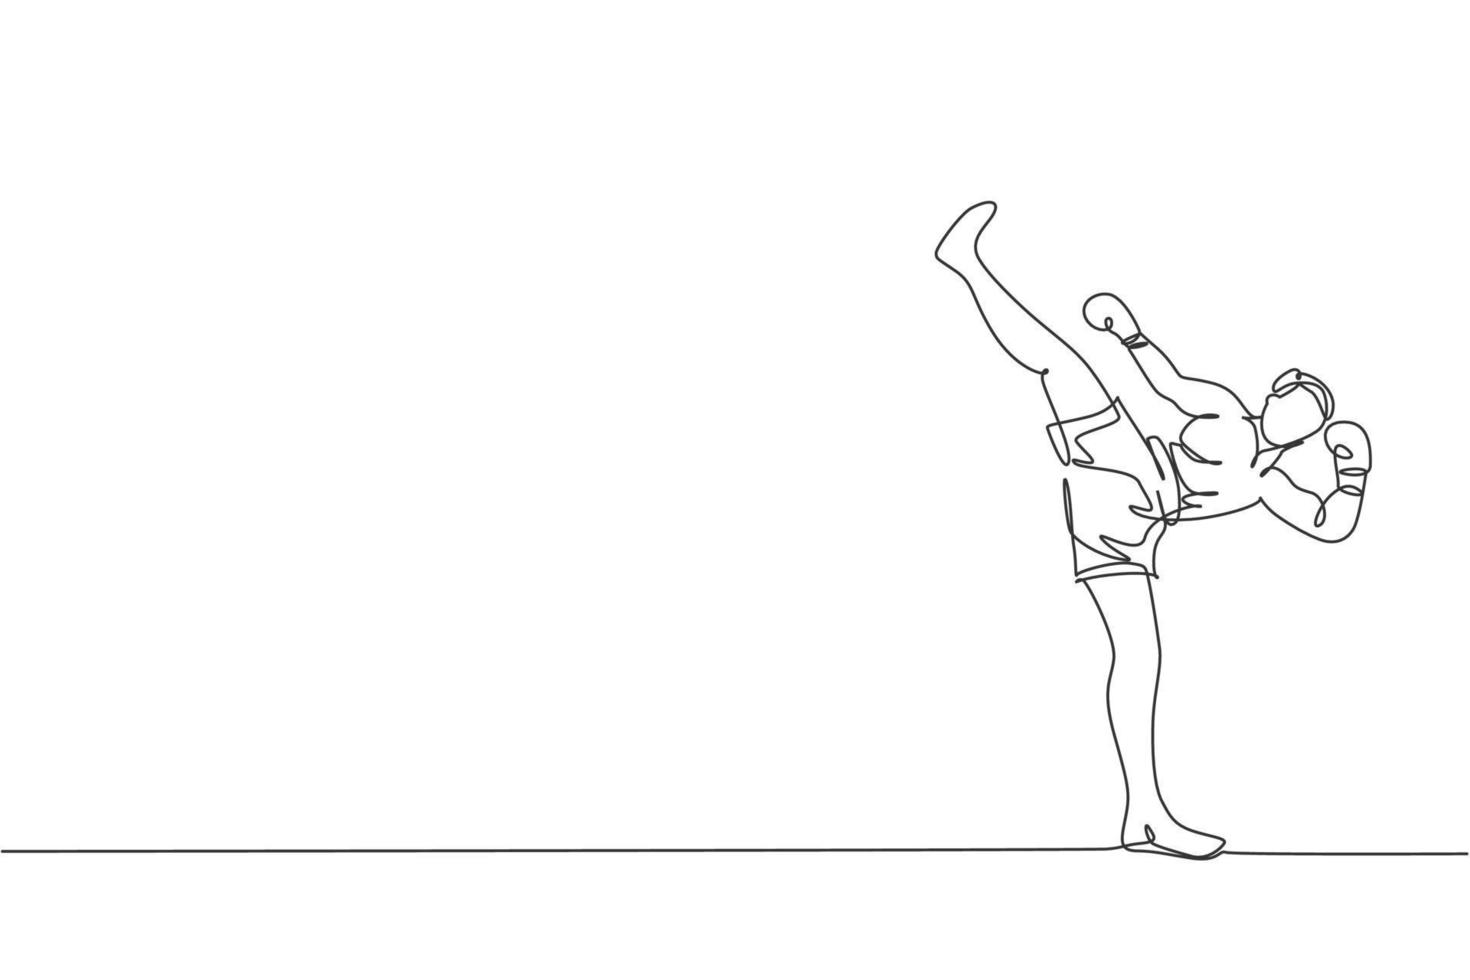 dibujo de una sola línea continua de un joven deportista que hace ejercicio de kickboxer con una patada alta en el pabellón deportivo. concepto de deporte de kickboxing de competición de lucha. Ilustración de vector de diseño gráfico de dibujo de una línea de moda